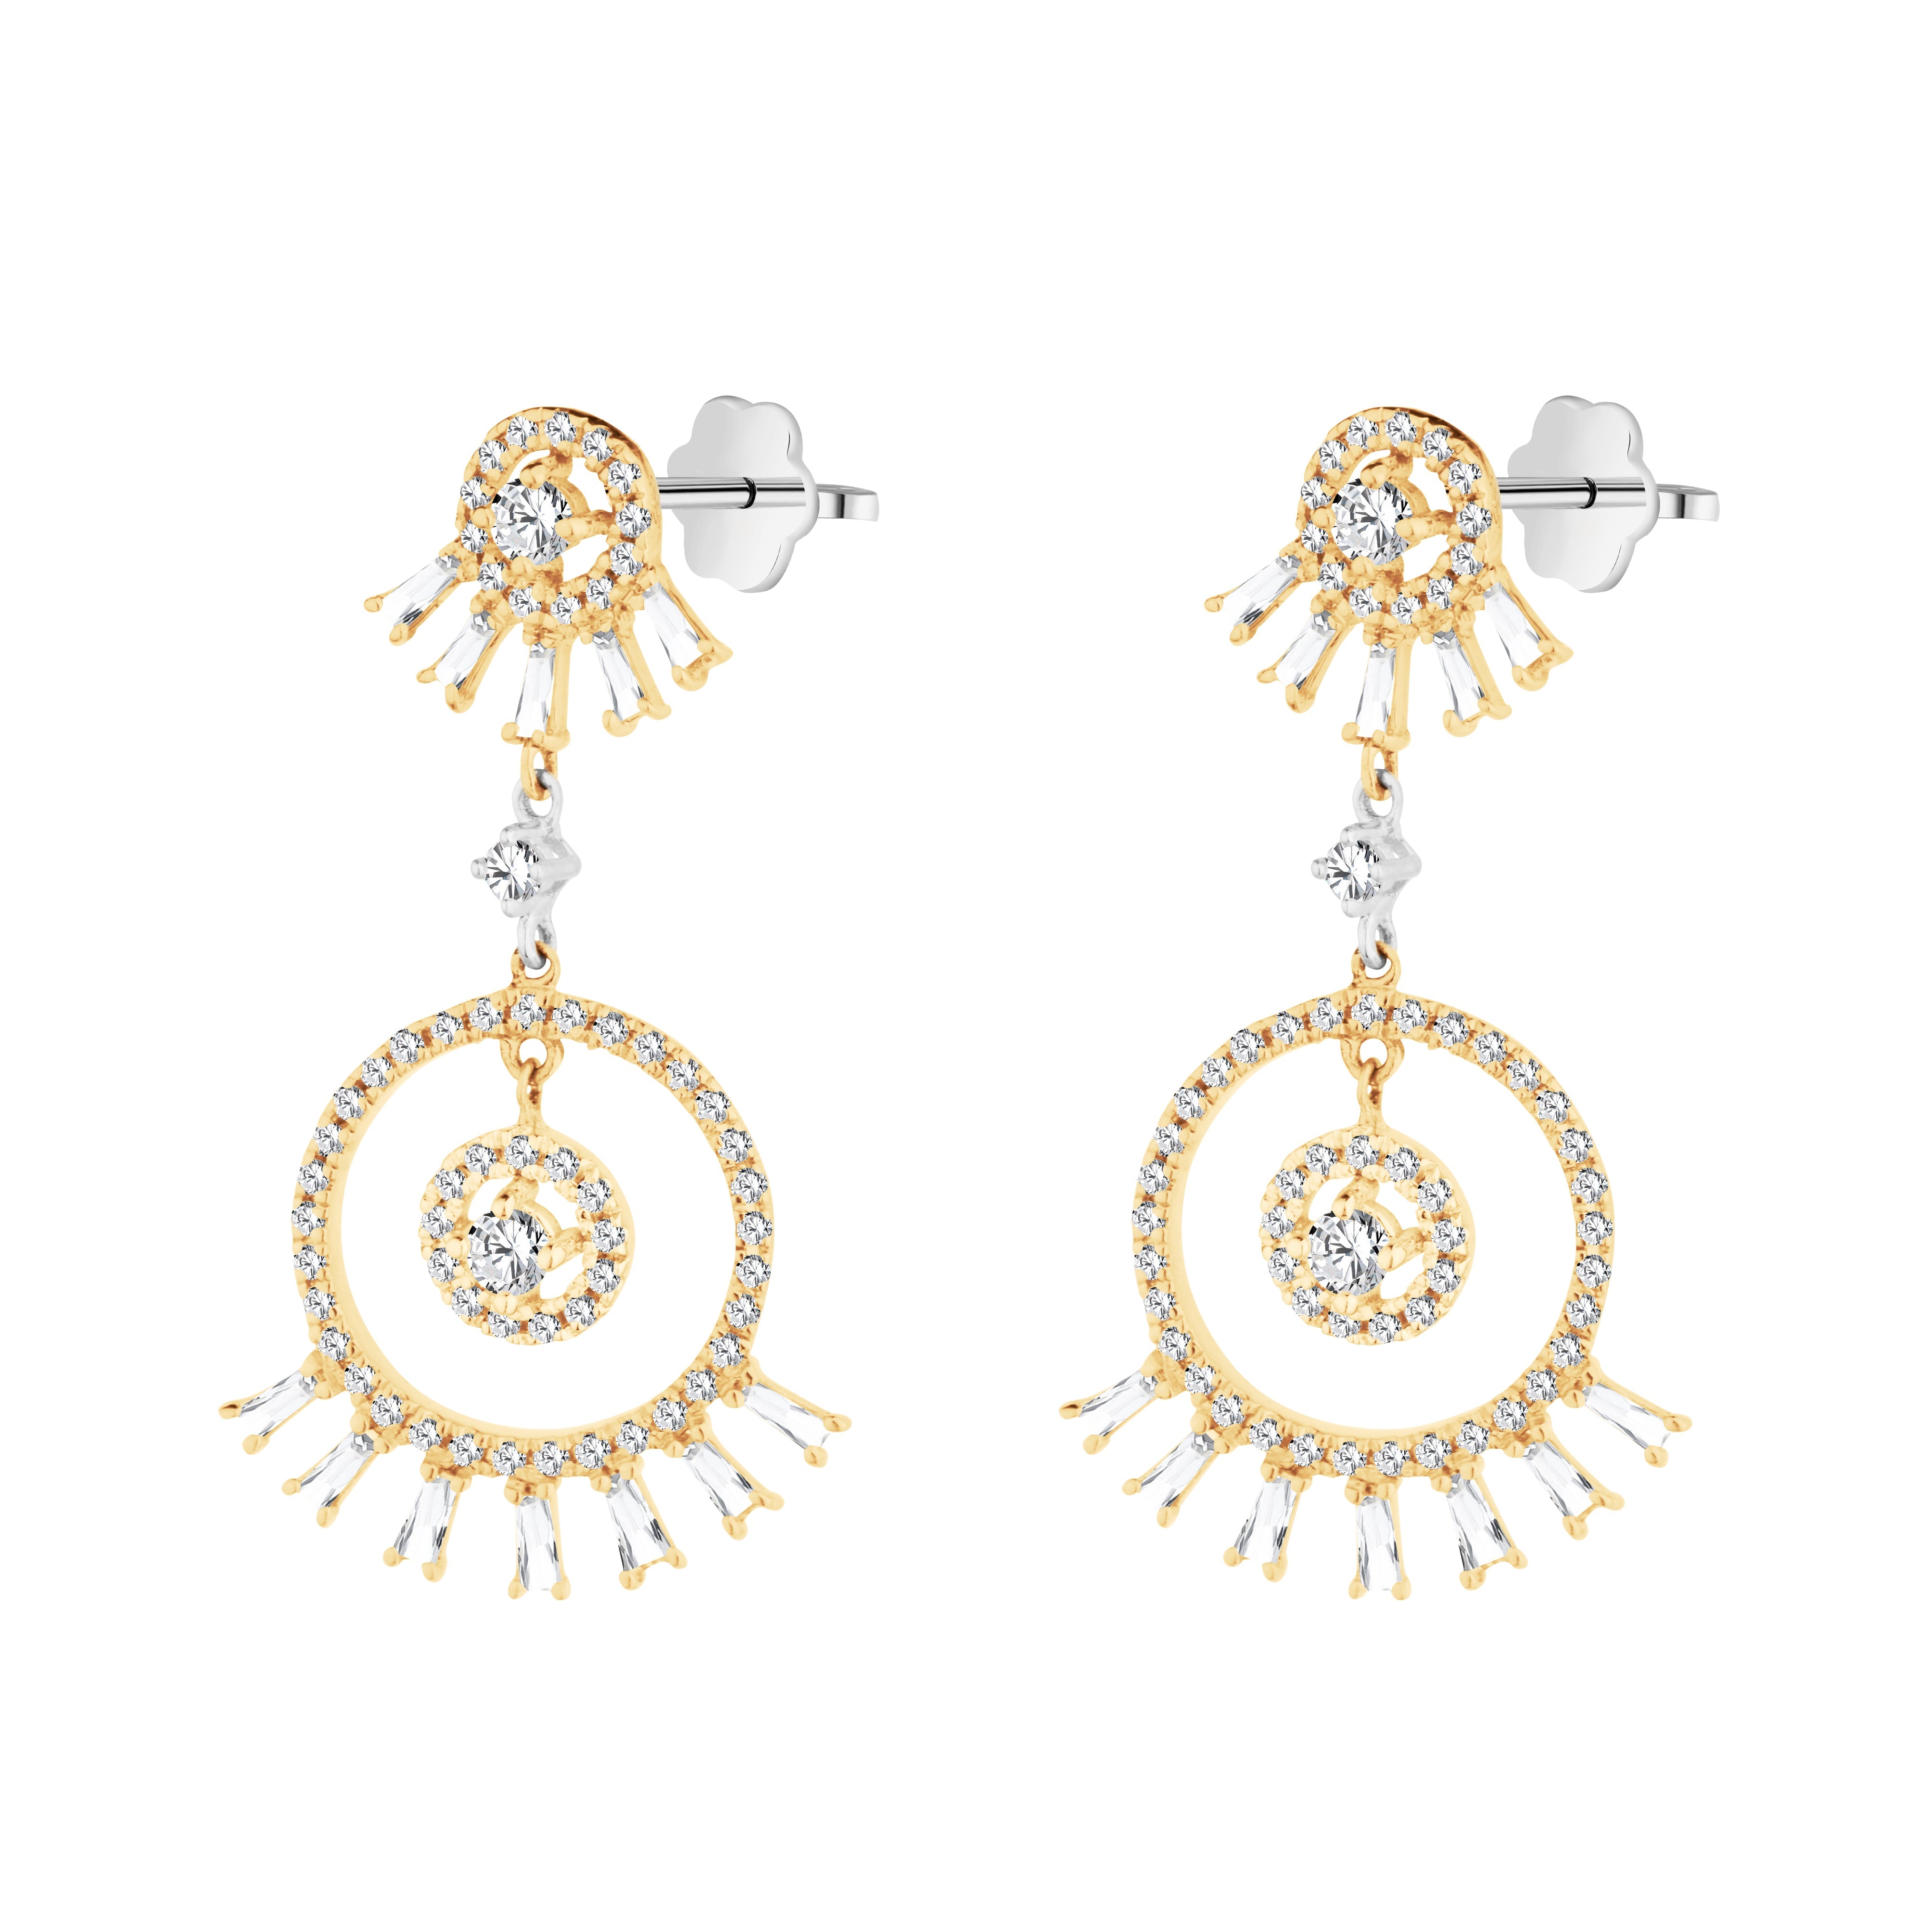 Shiny Dangling Diamond Earring in 18k White & Yellow gold - CN-0671-E